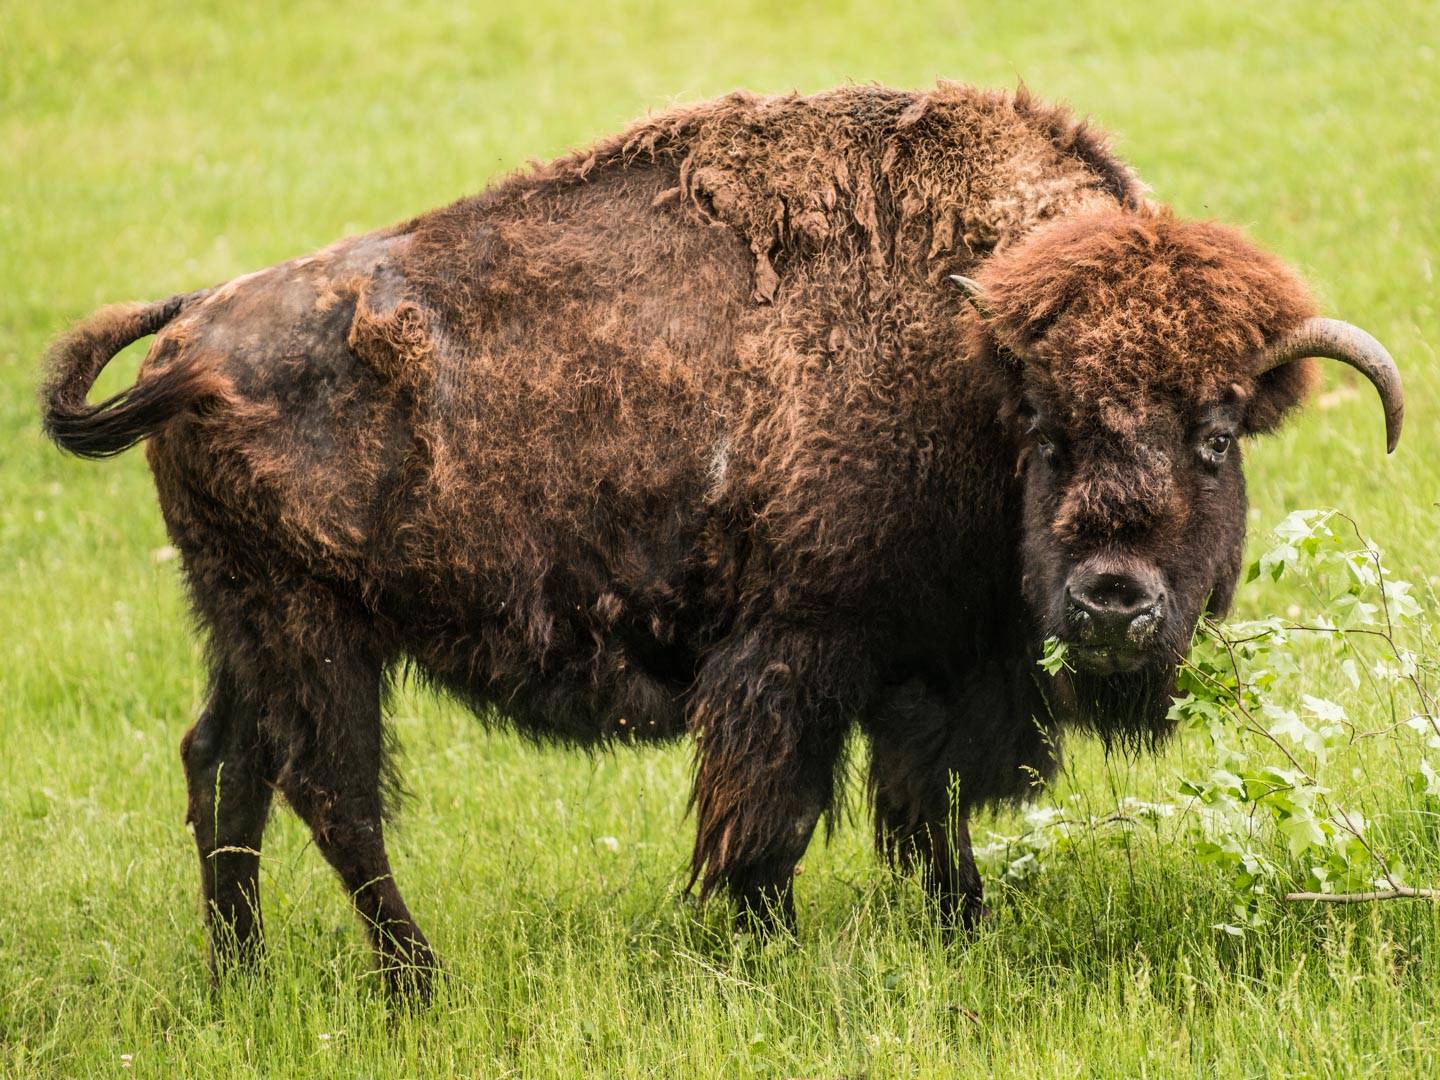 bison face